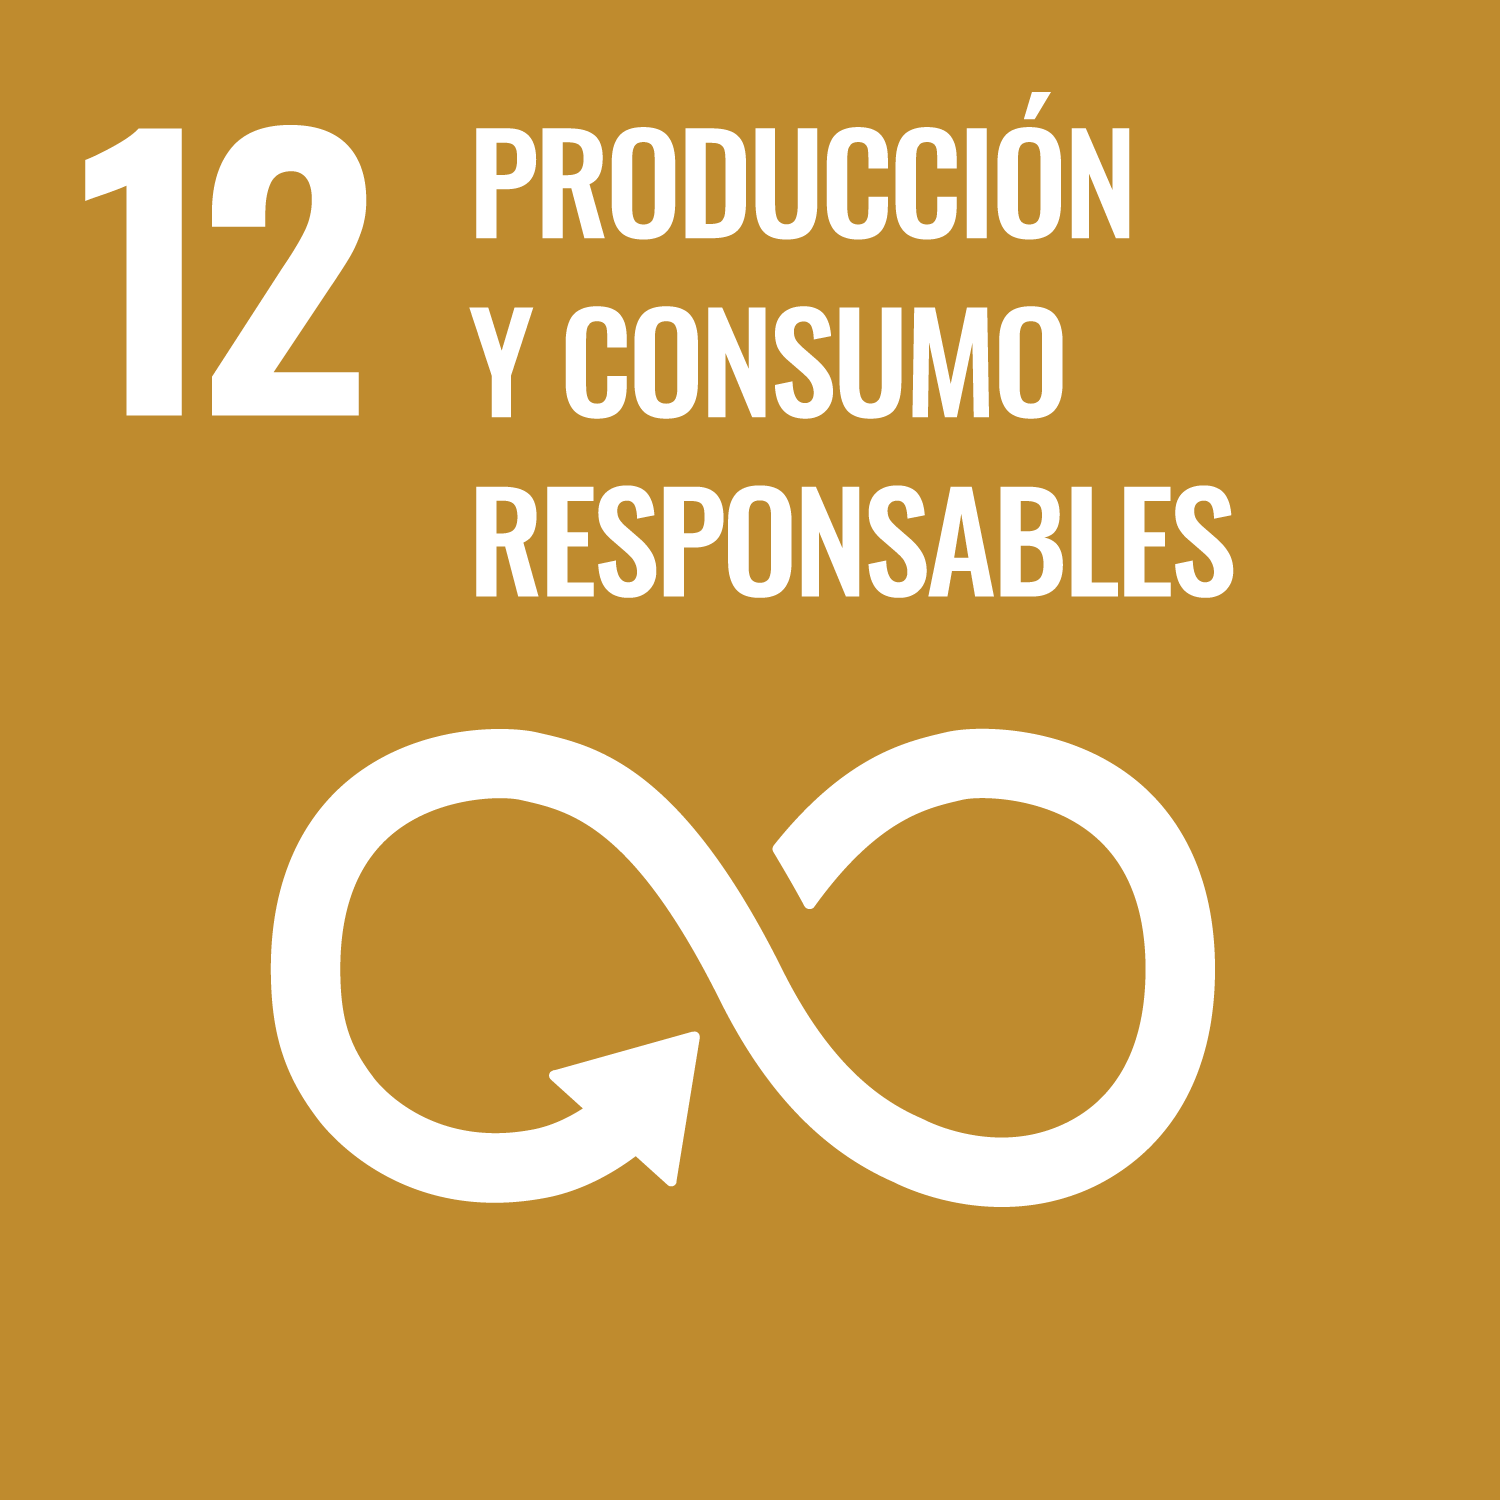 ODS 12: Garantizar modalidades de consumo y producción sostenibles